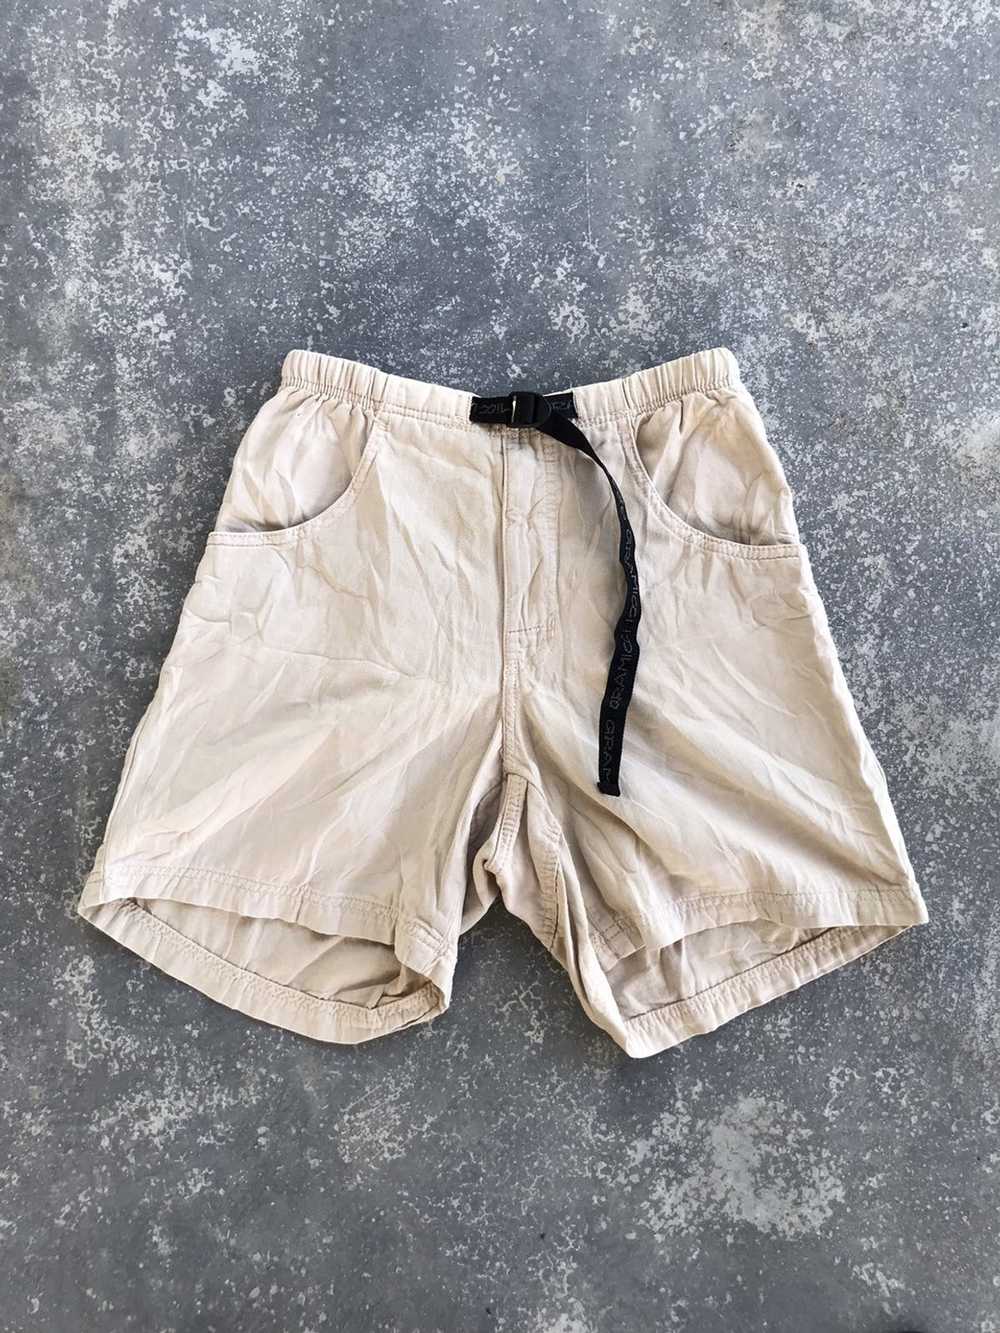 Gramicci Vintage Gramicci hiking shorts pants - Gem